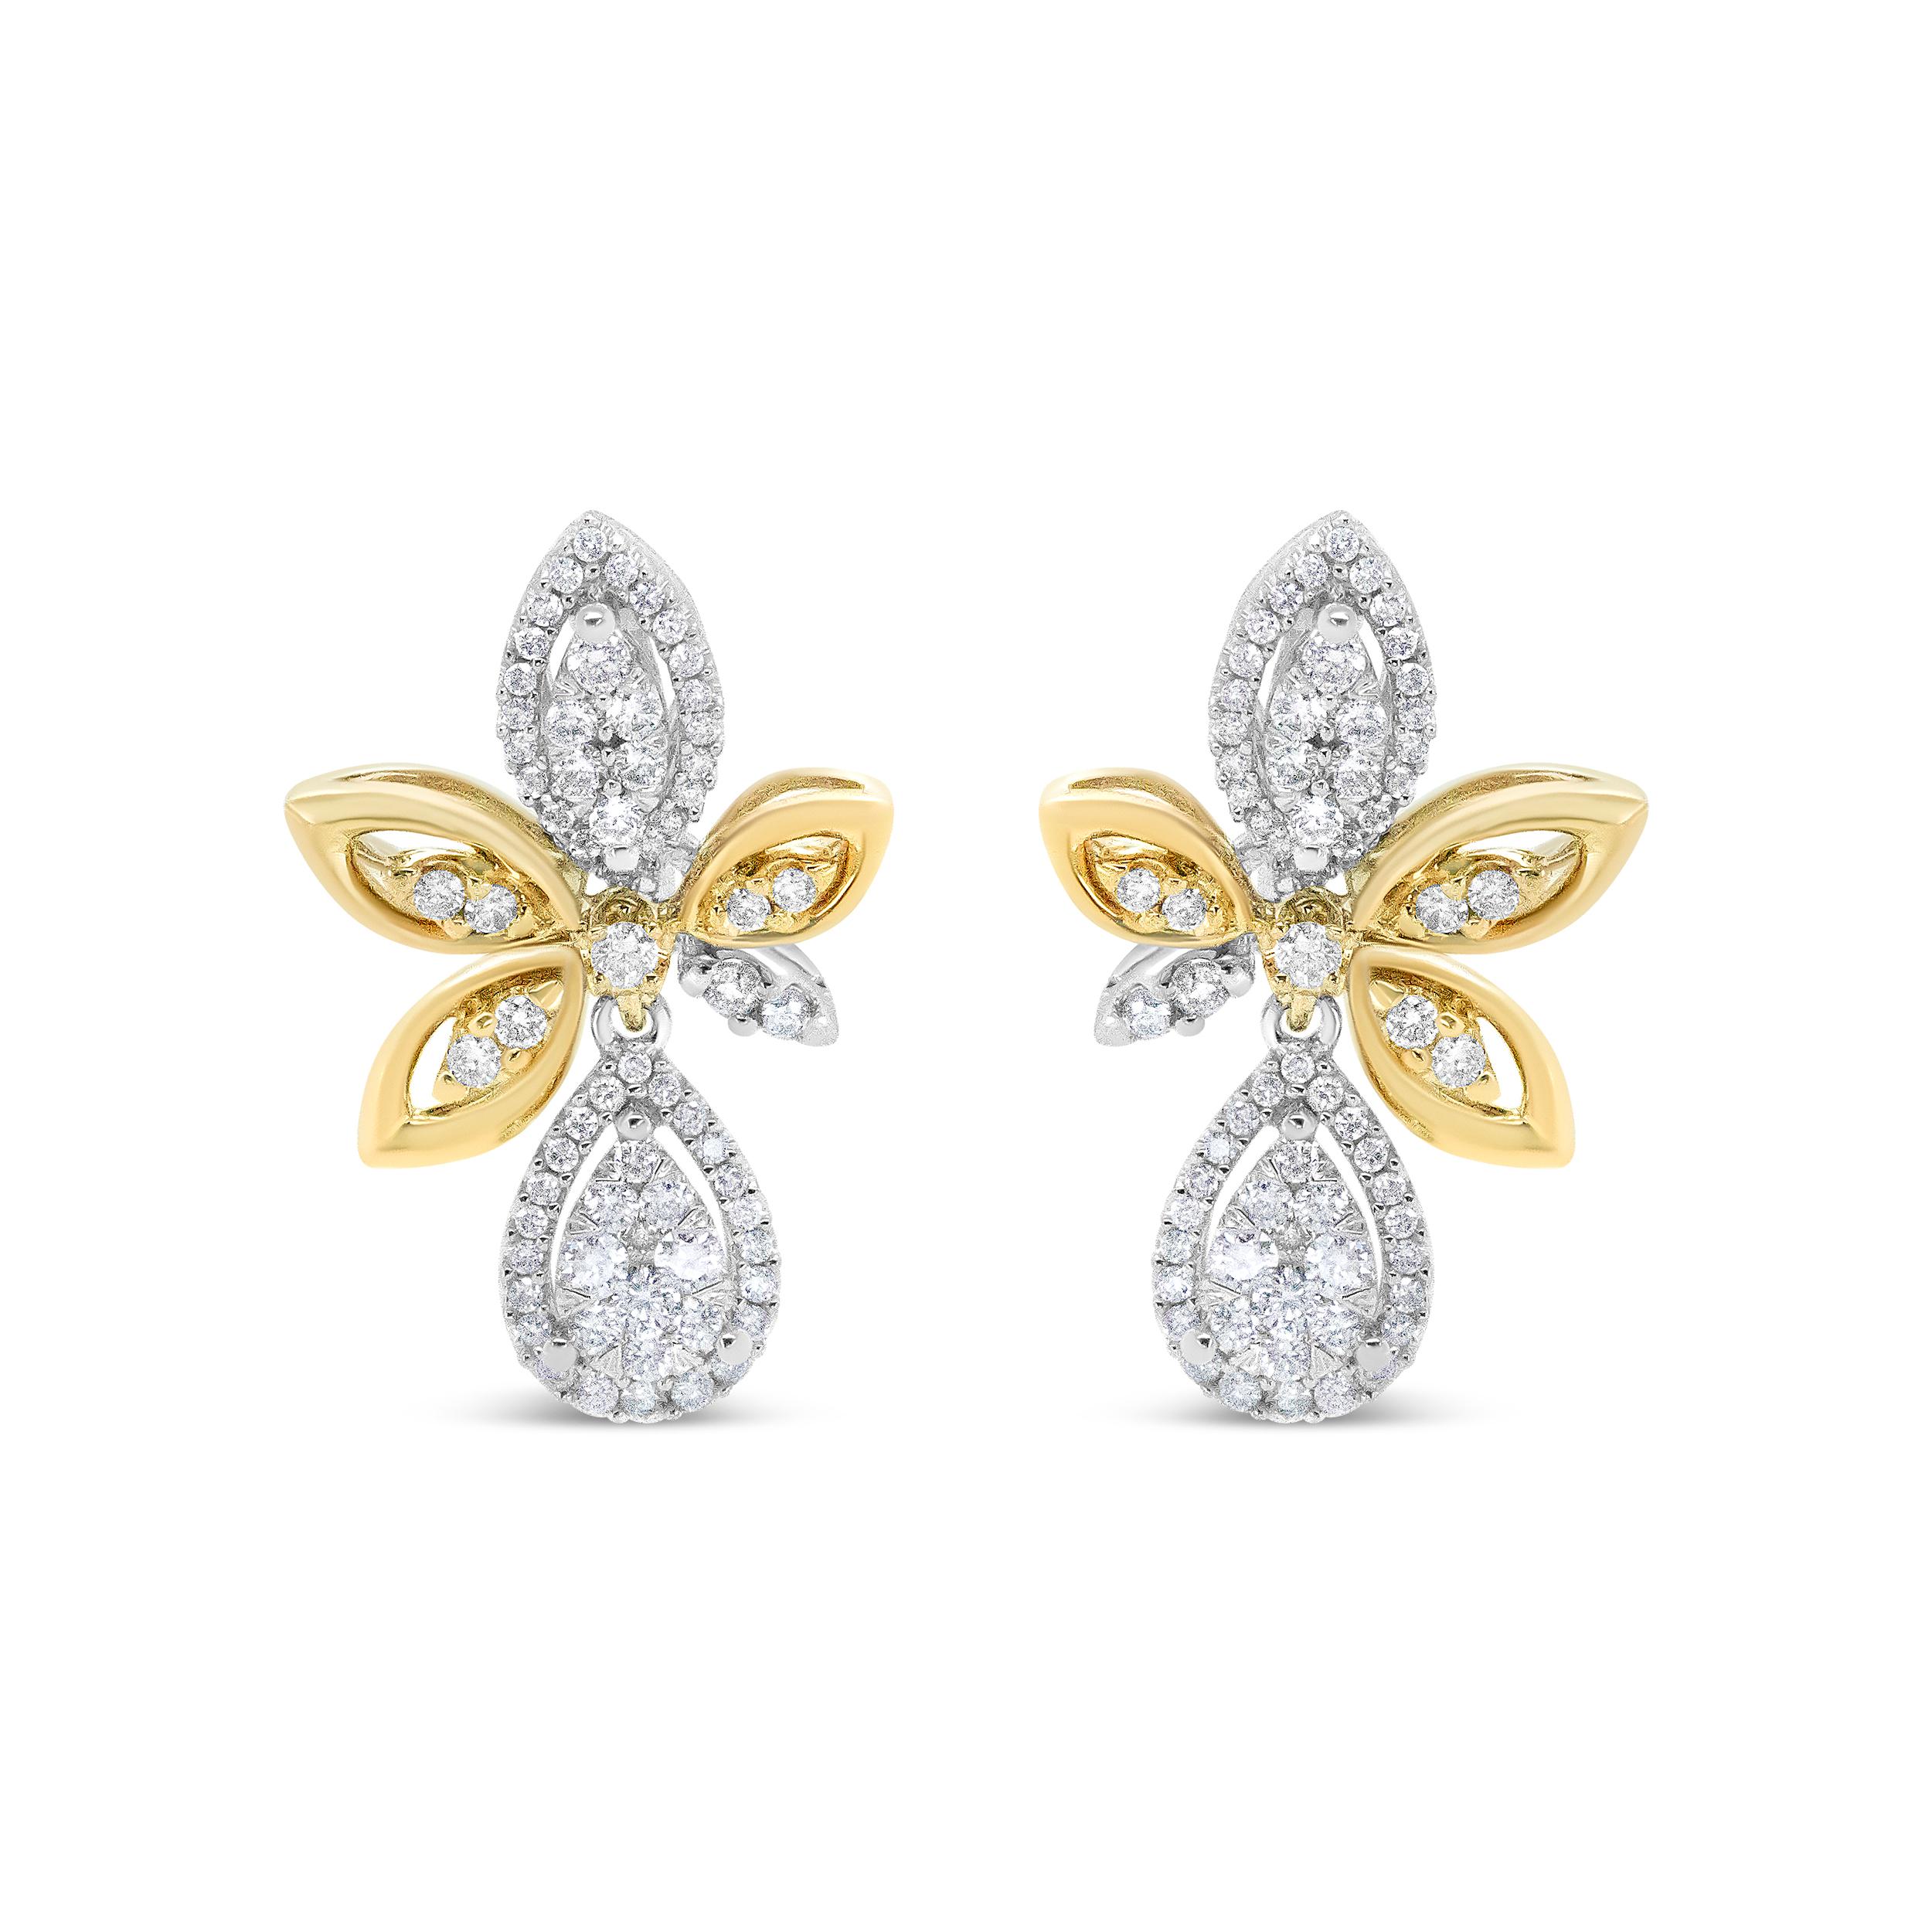 Dieses traumhafte Paar tropfenförmiger Ohrringe strahlt totalen Luxus aus, getränkt in den Glanz von 140 runden weißen Diamanten in prächtiger Pflasterfassung. Diese funkelnden Diamanten haben insgesamt 1,00 cttw mit einer ungefähren H-I Farbe und